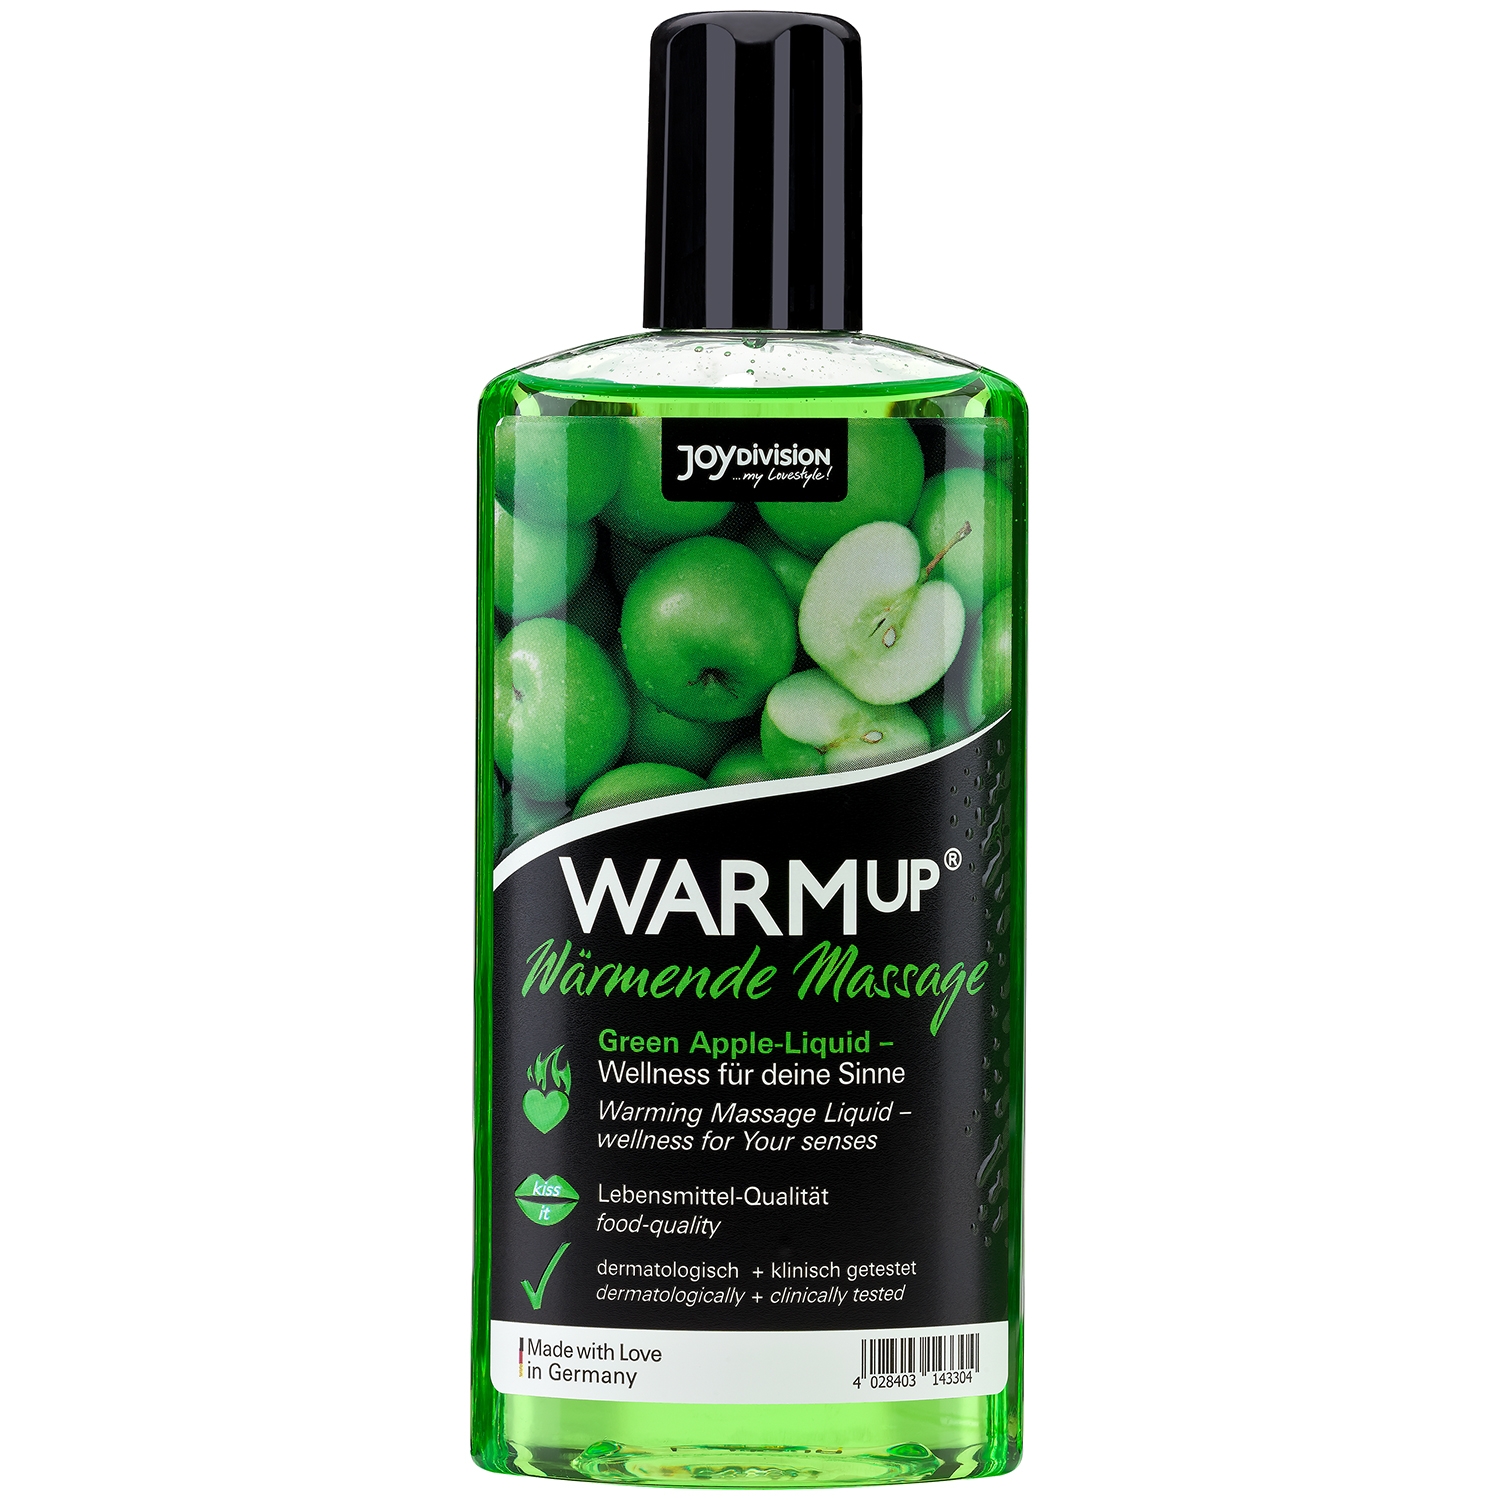 Joydivision WARMup Varmende Massageolie med Smag 150 ml - Green thumbnail